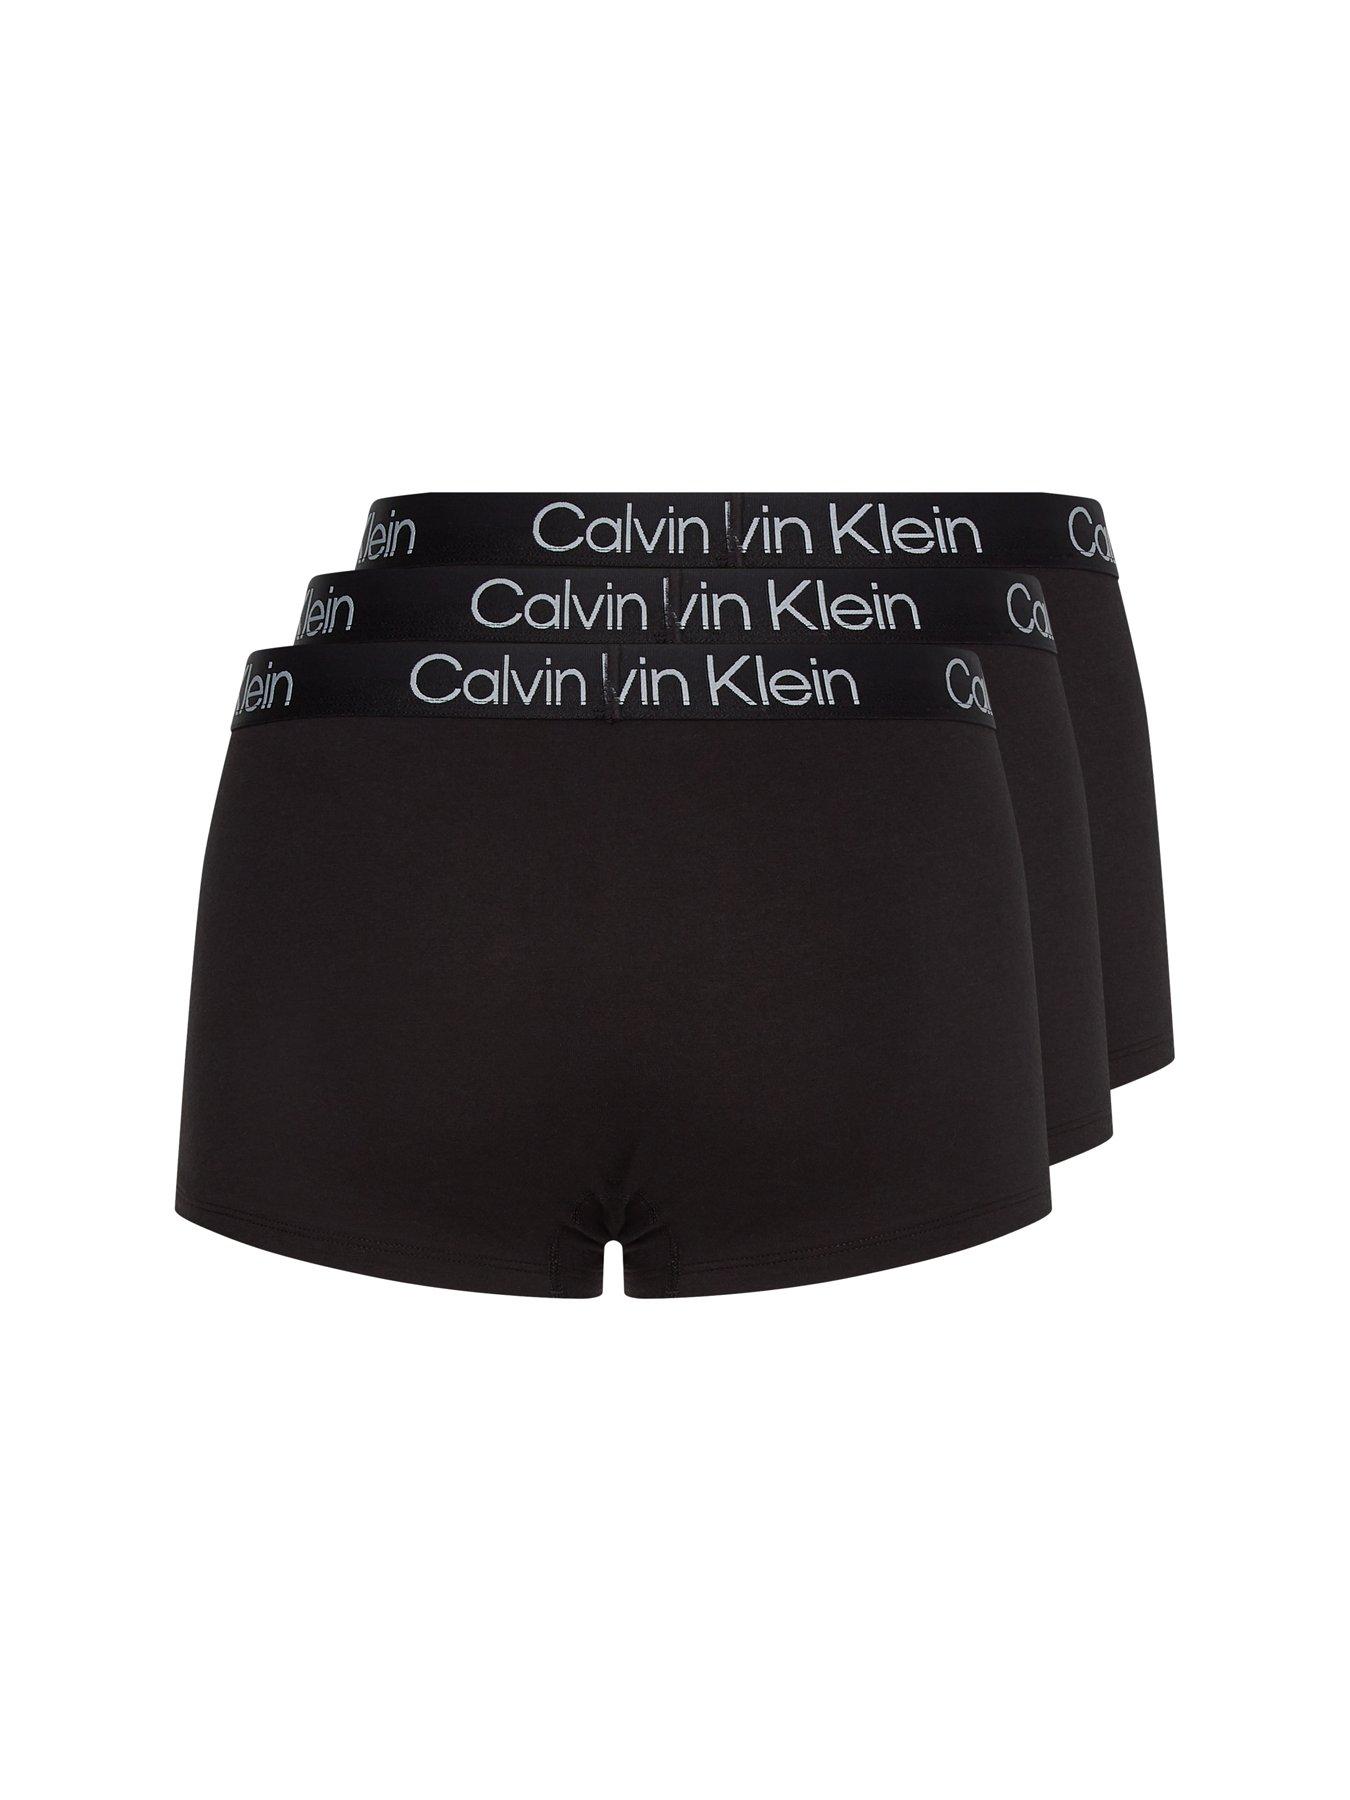 Calvin Klein Underwear MODERN STRUCTURE TRUNK 3-PACK Multi